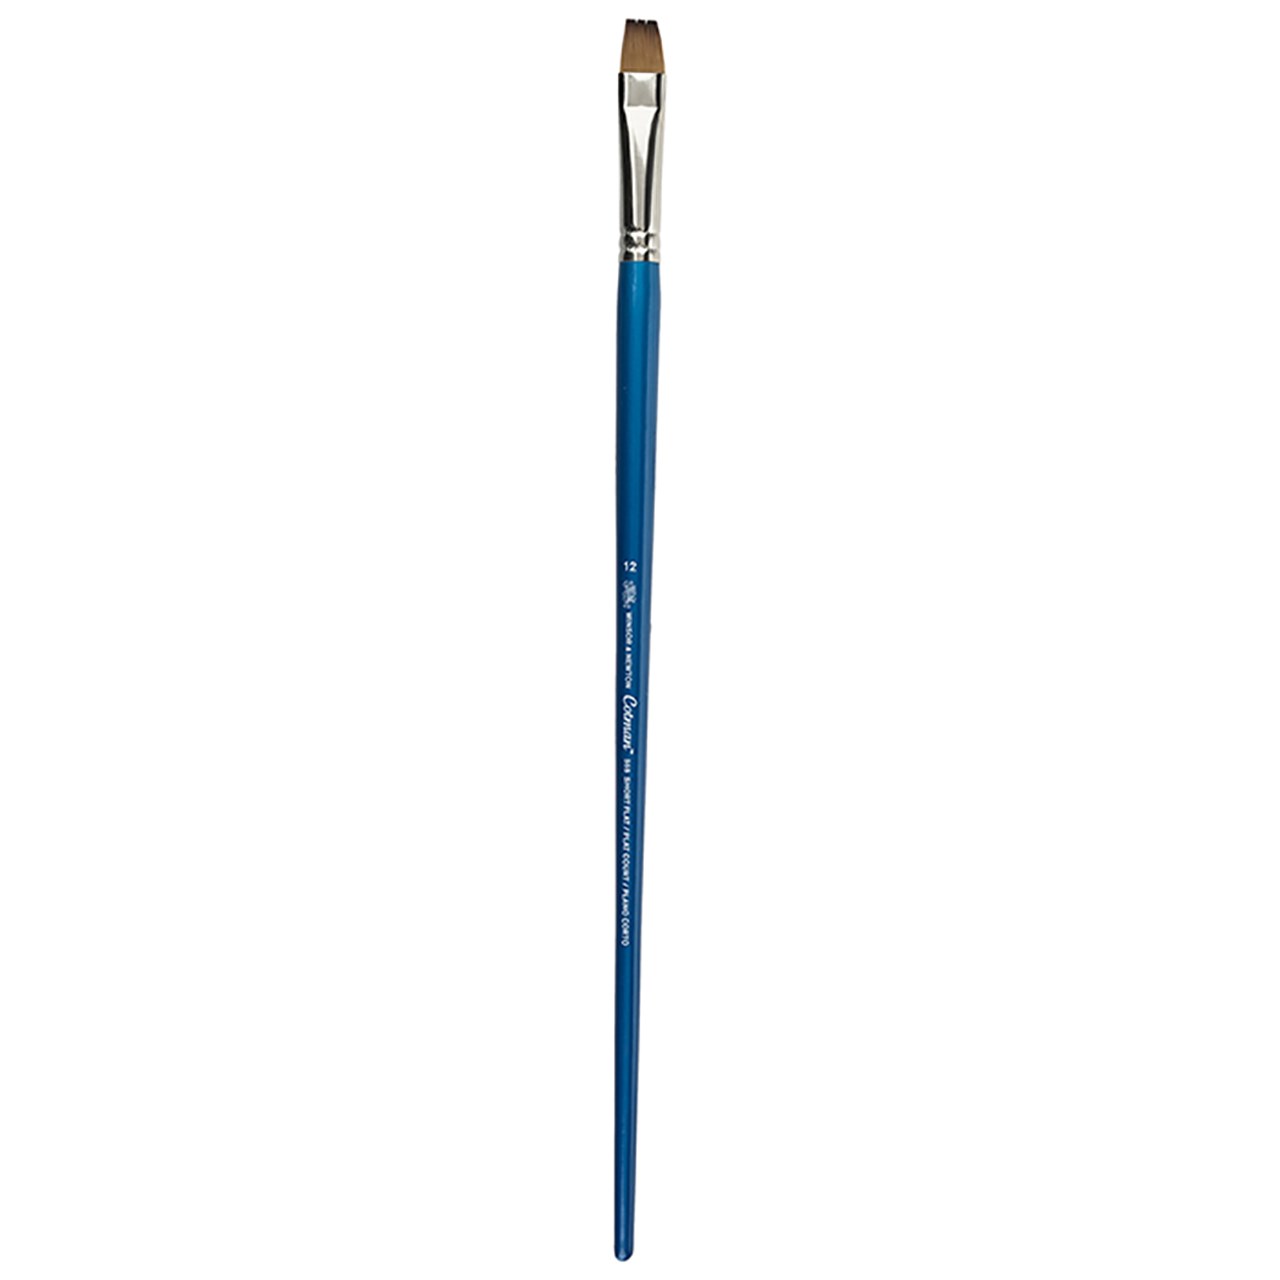 قلم موی تخت وینزور سری 555 مدل Cotman شماره 12